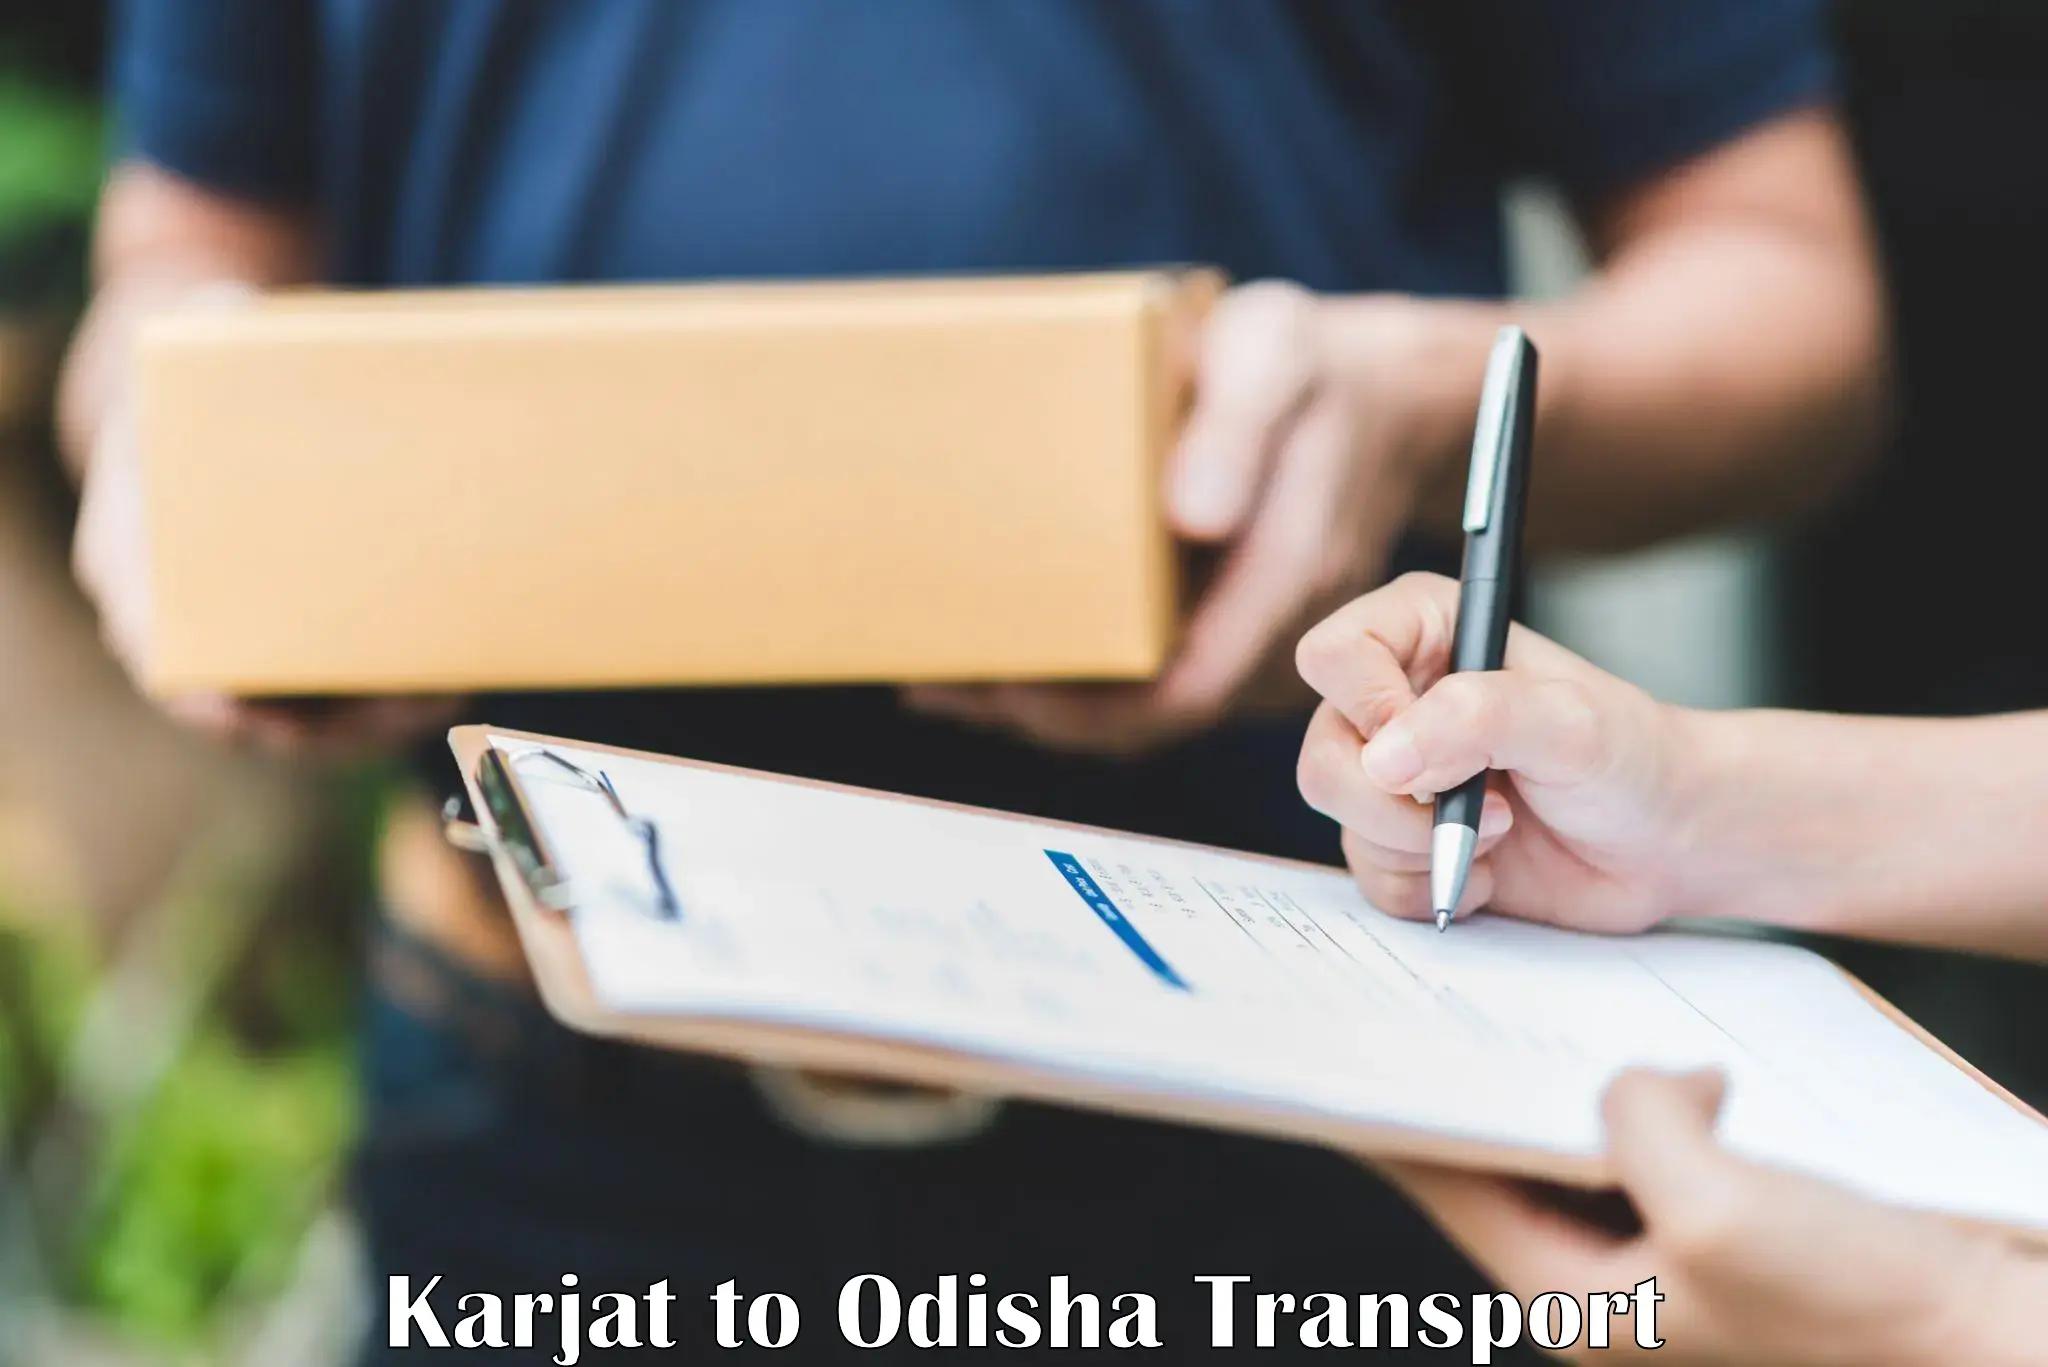 Furniture transport service Karjat to Muribahal